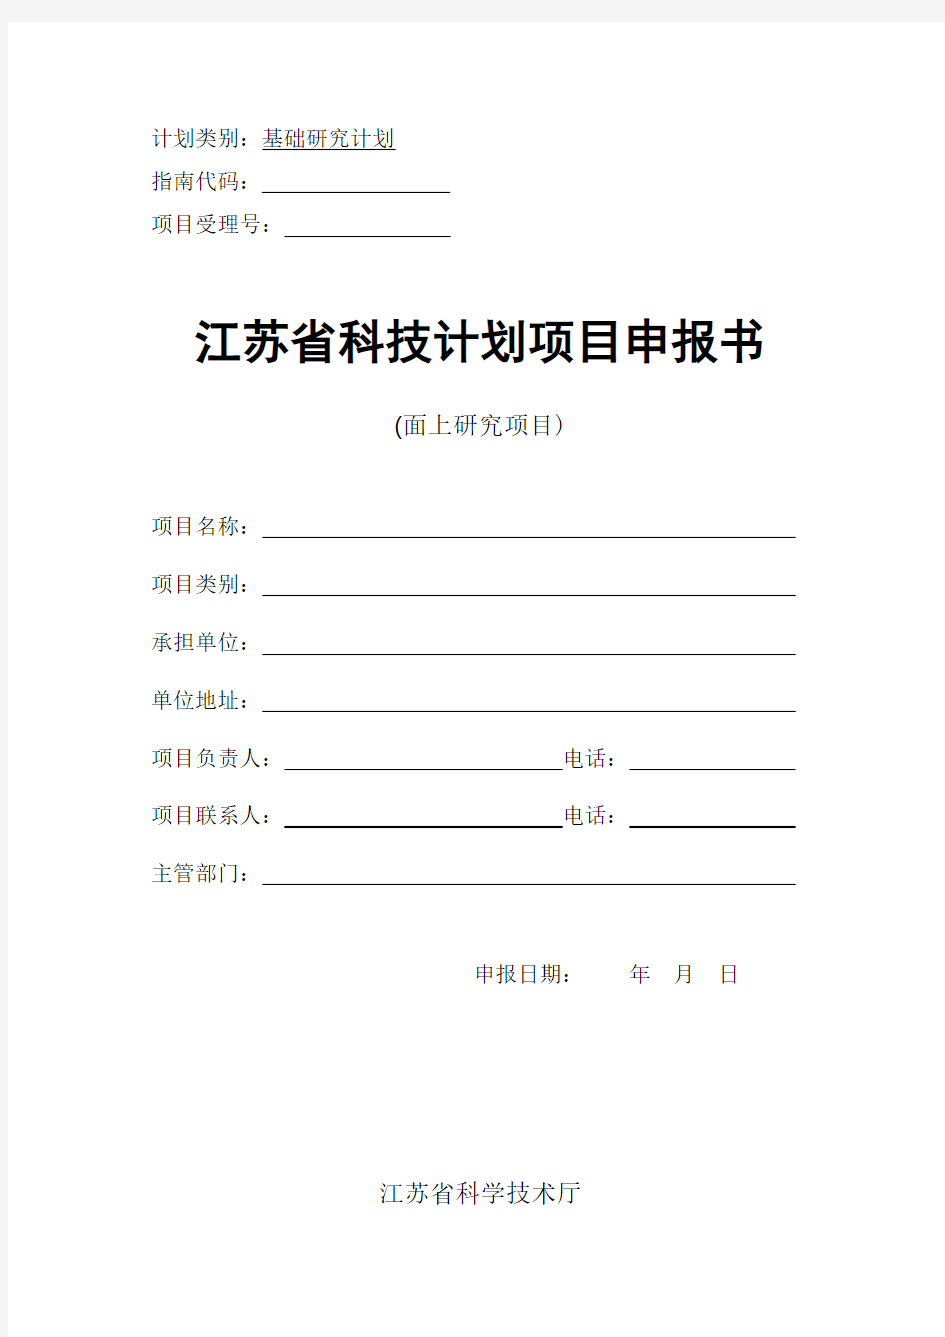 江苏省自然科学基金项目申报书(面上项目)